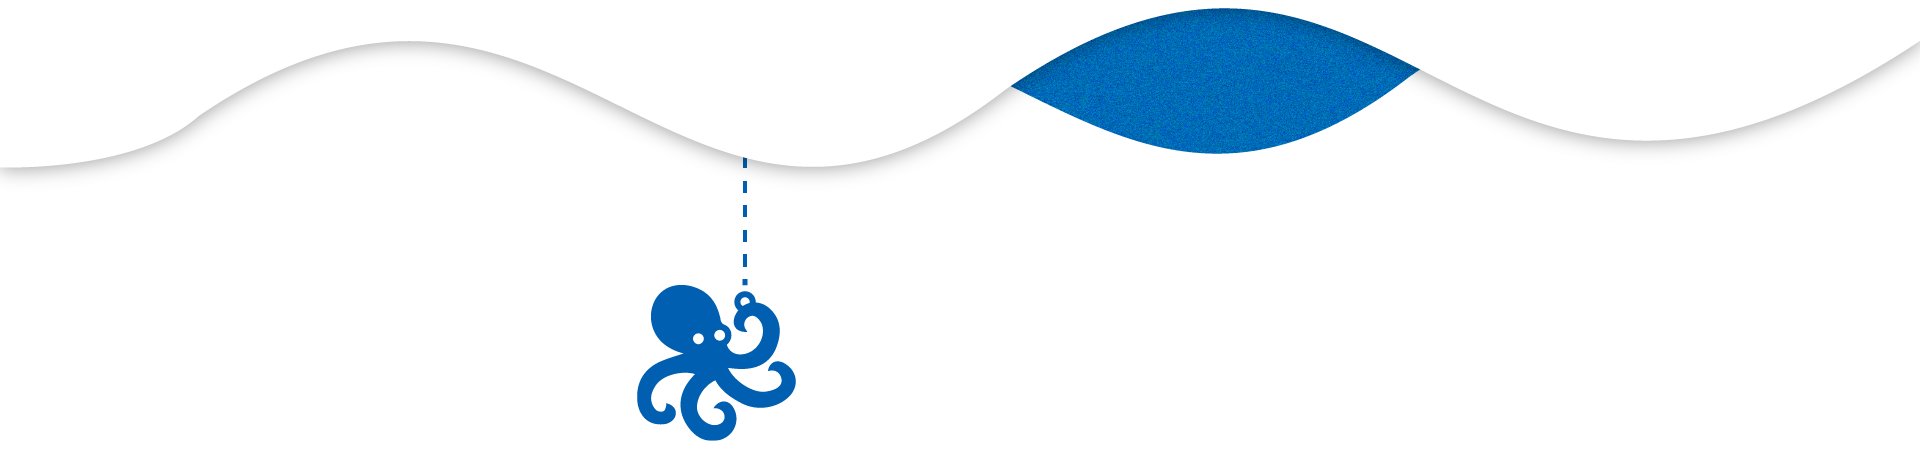 Banner estilizado Azul y Blanco de un pulpo en el mar